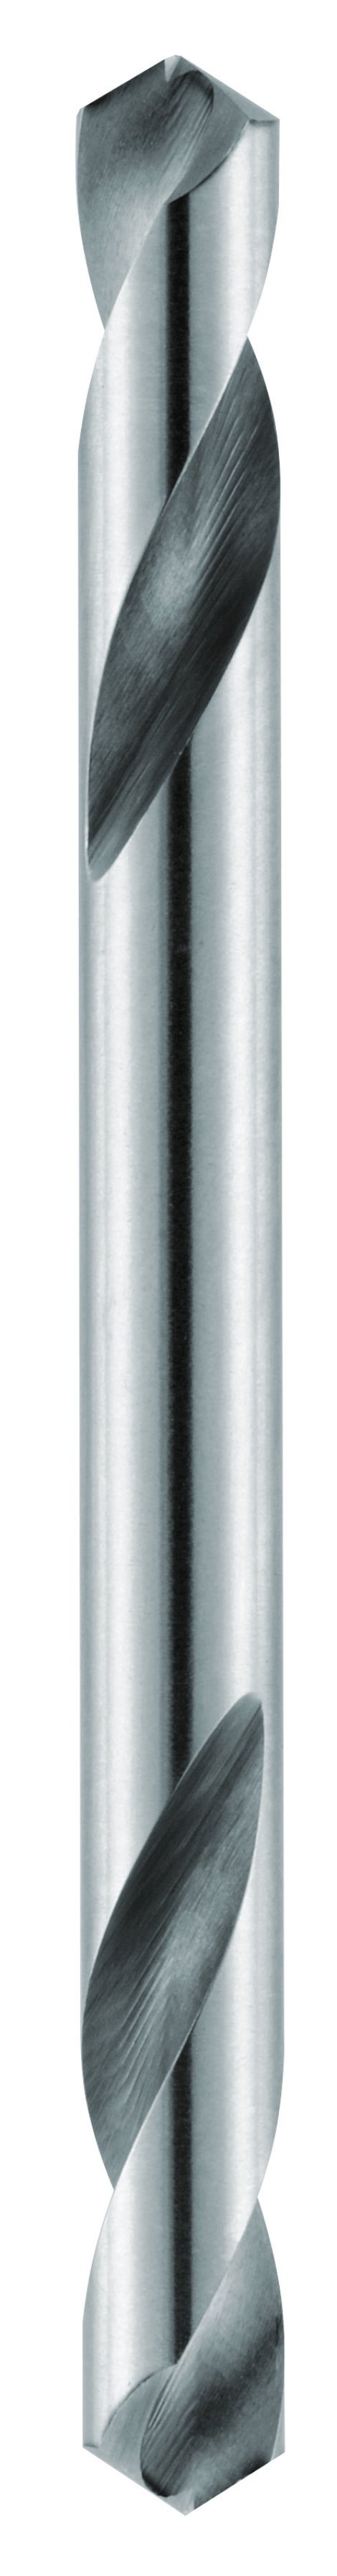 ALPEN Blindnietbohrer HSS ⌀ 4,2 mm 2 Stk.